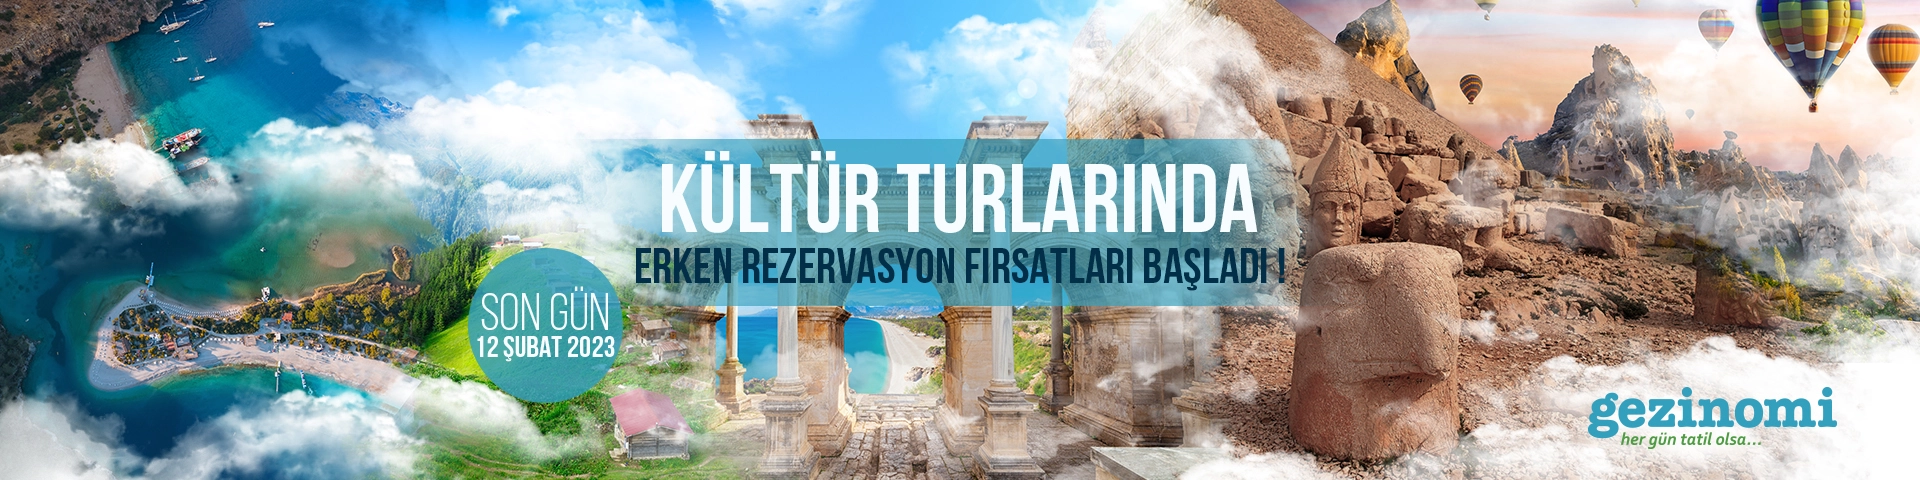 Kültür Turlarında Erken Rezervasyon Fırsatları